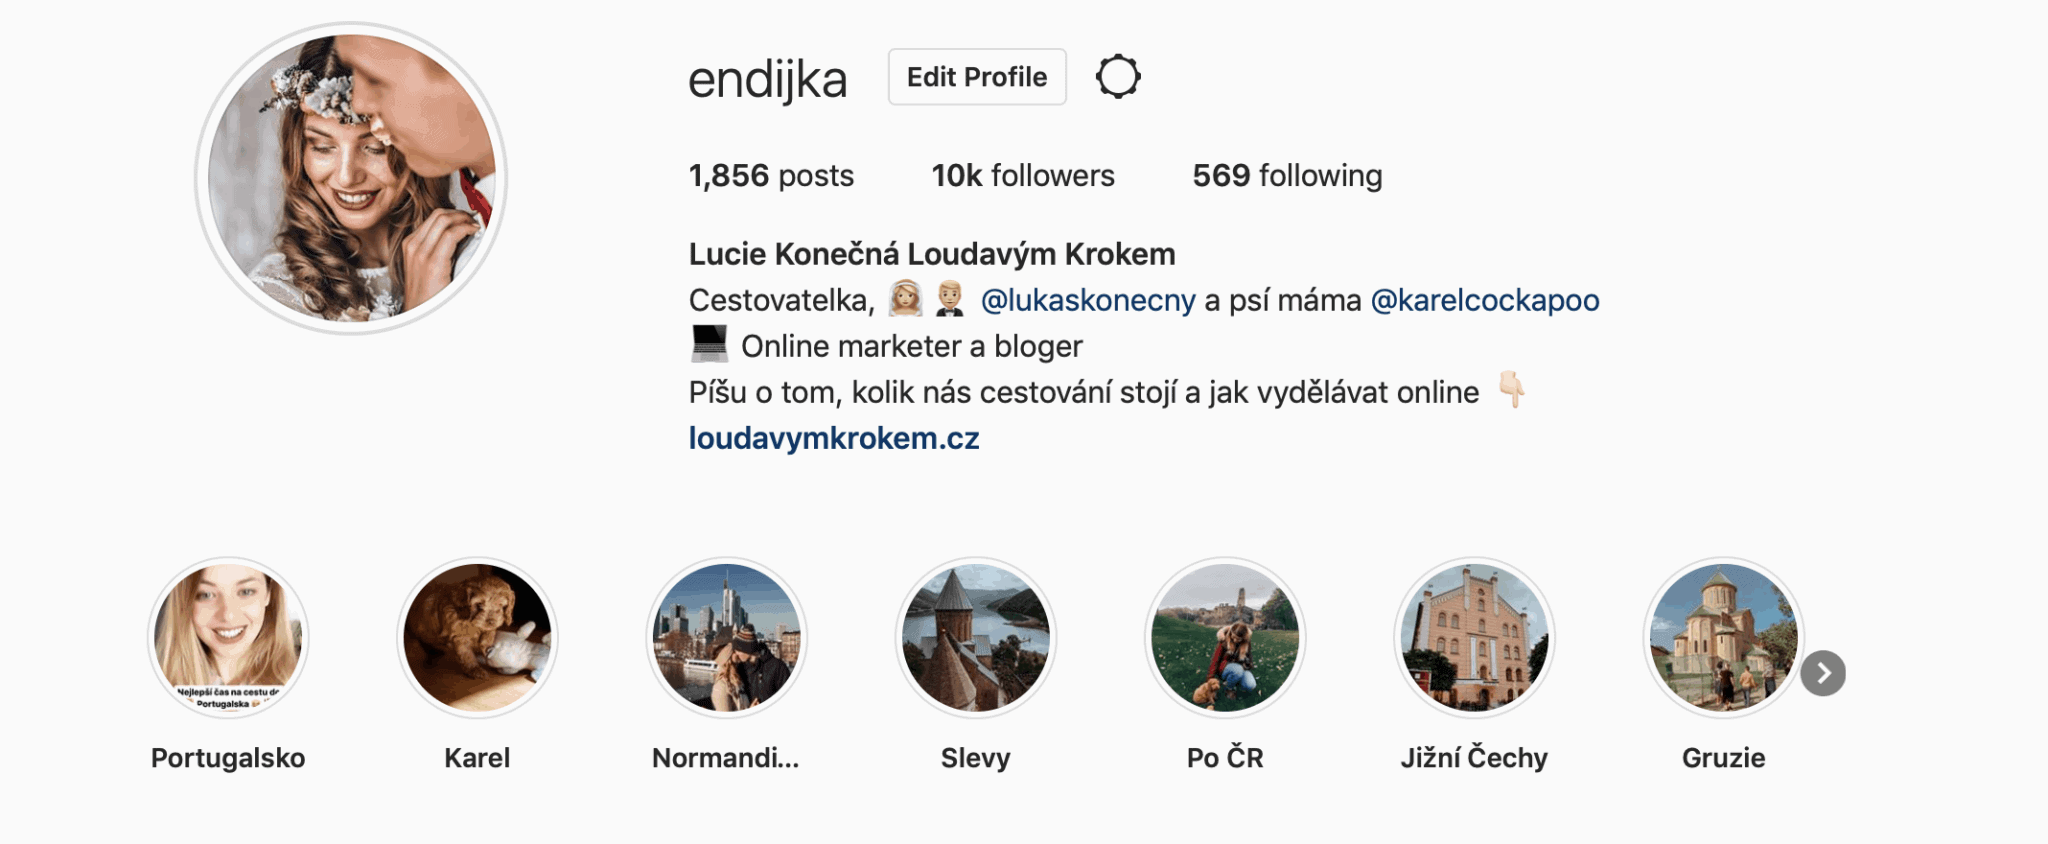 Můj profil na Instagramu 🙂 Sledovat mě můžete zde